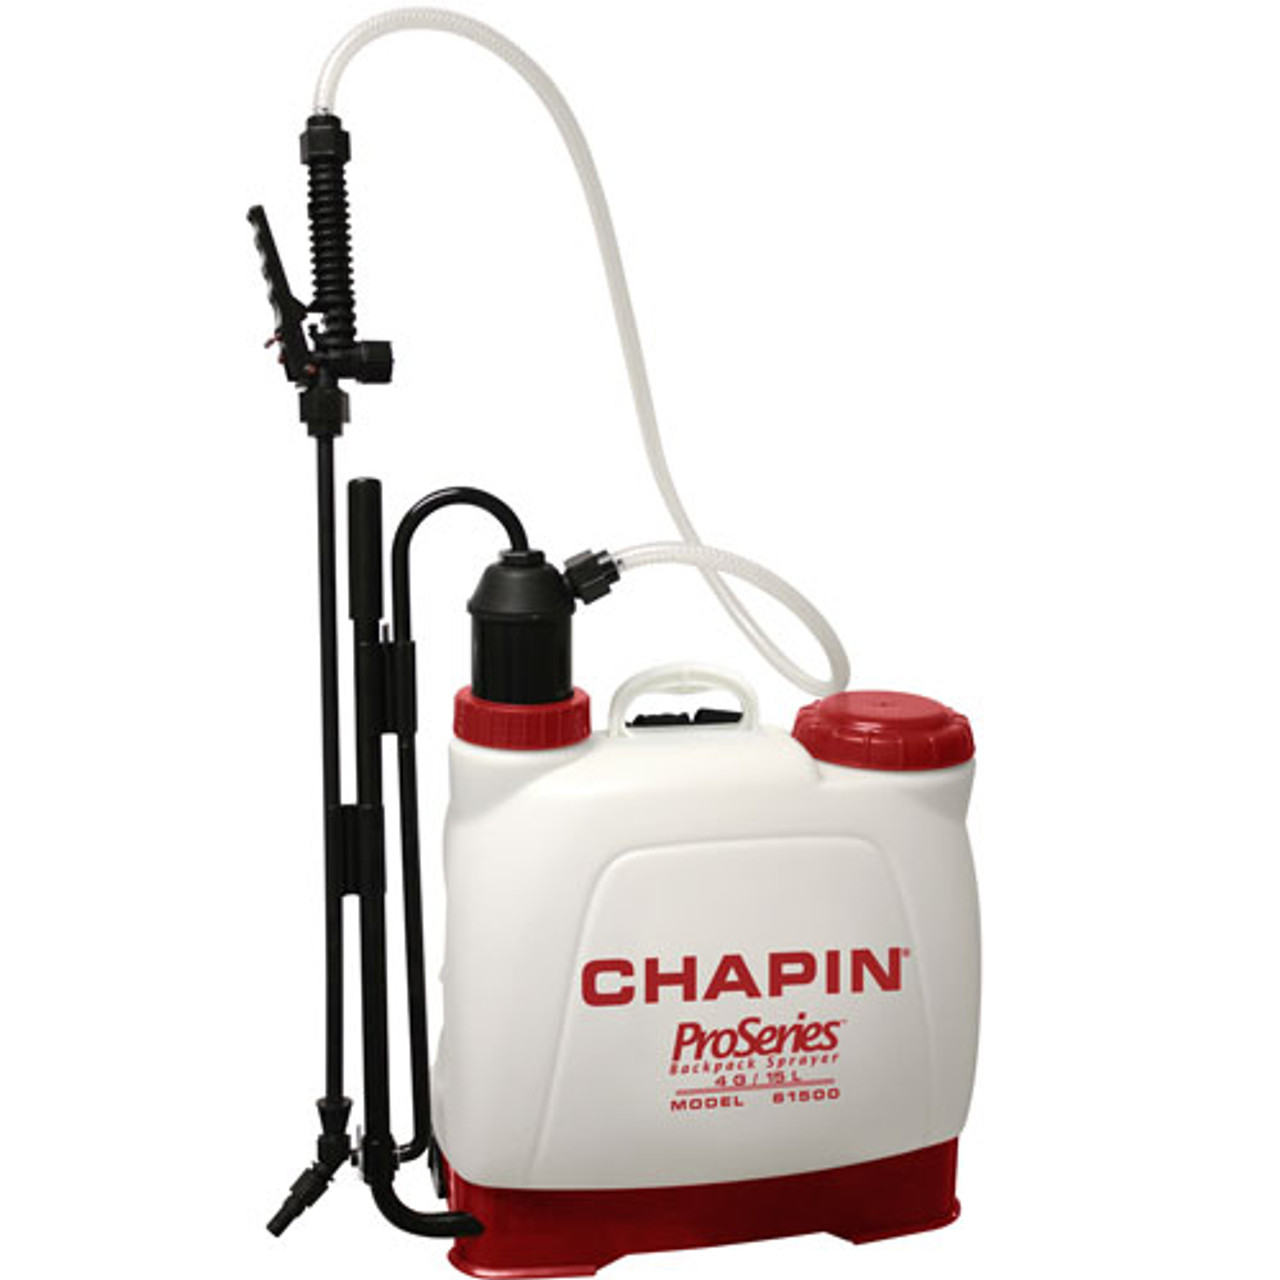 Chaplin ProSeries Back Pack Sprayer